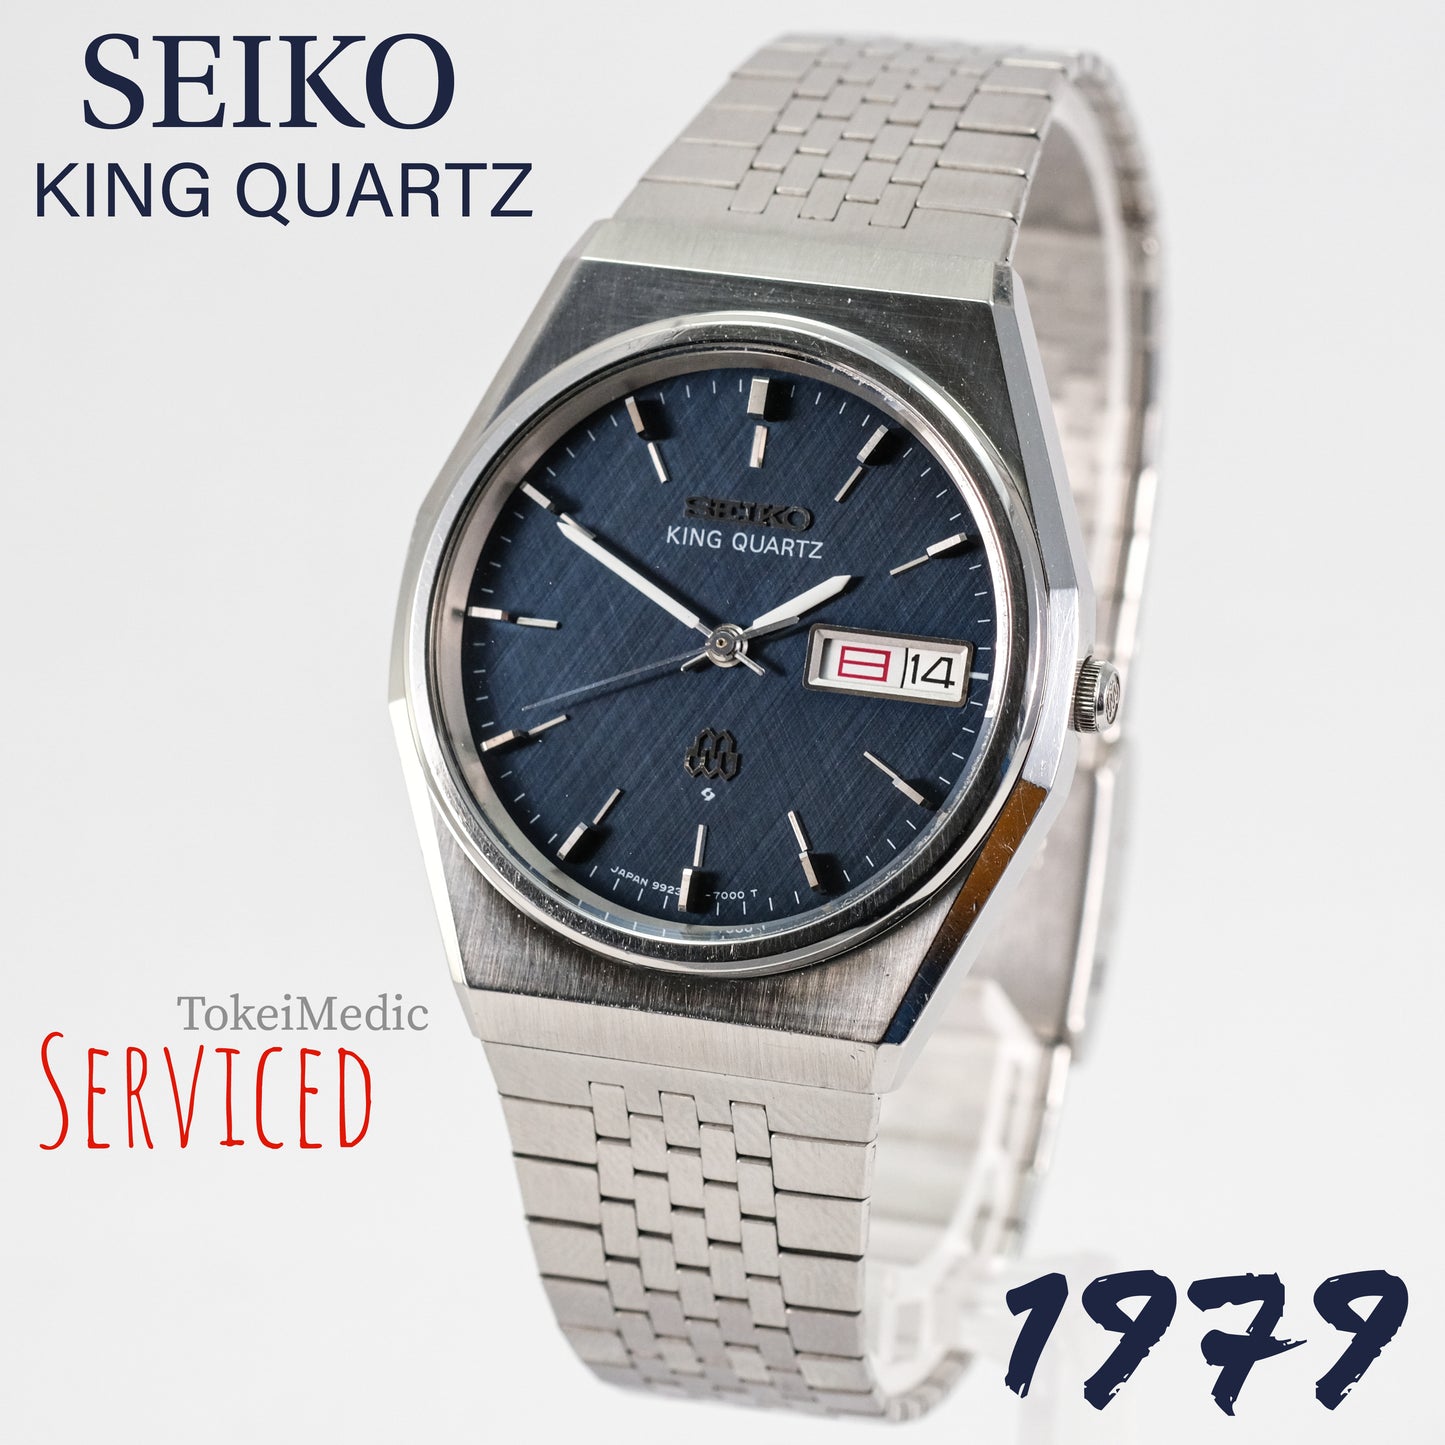 1979 Seiko King Quartz 9923-7000